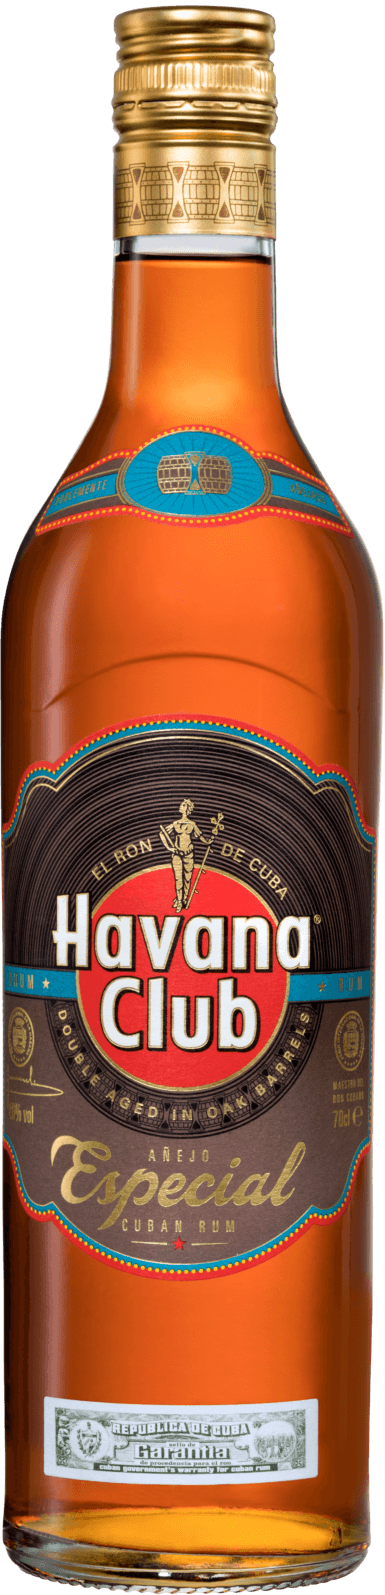 Golden rum Havana Club Especial Havana Club 